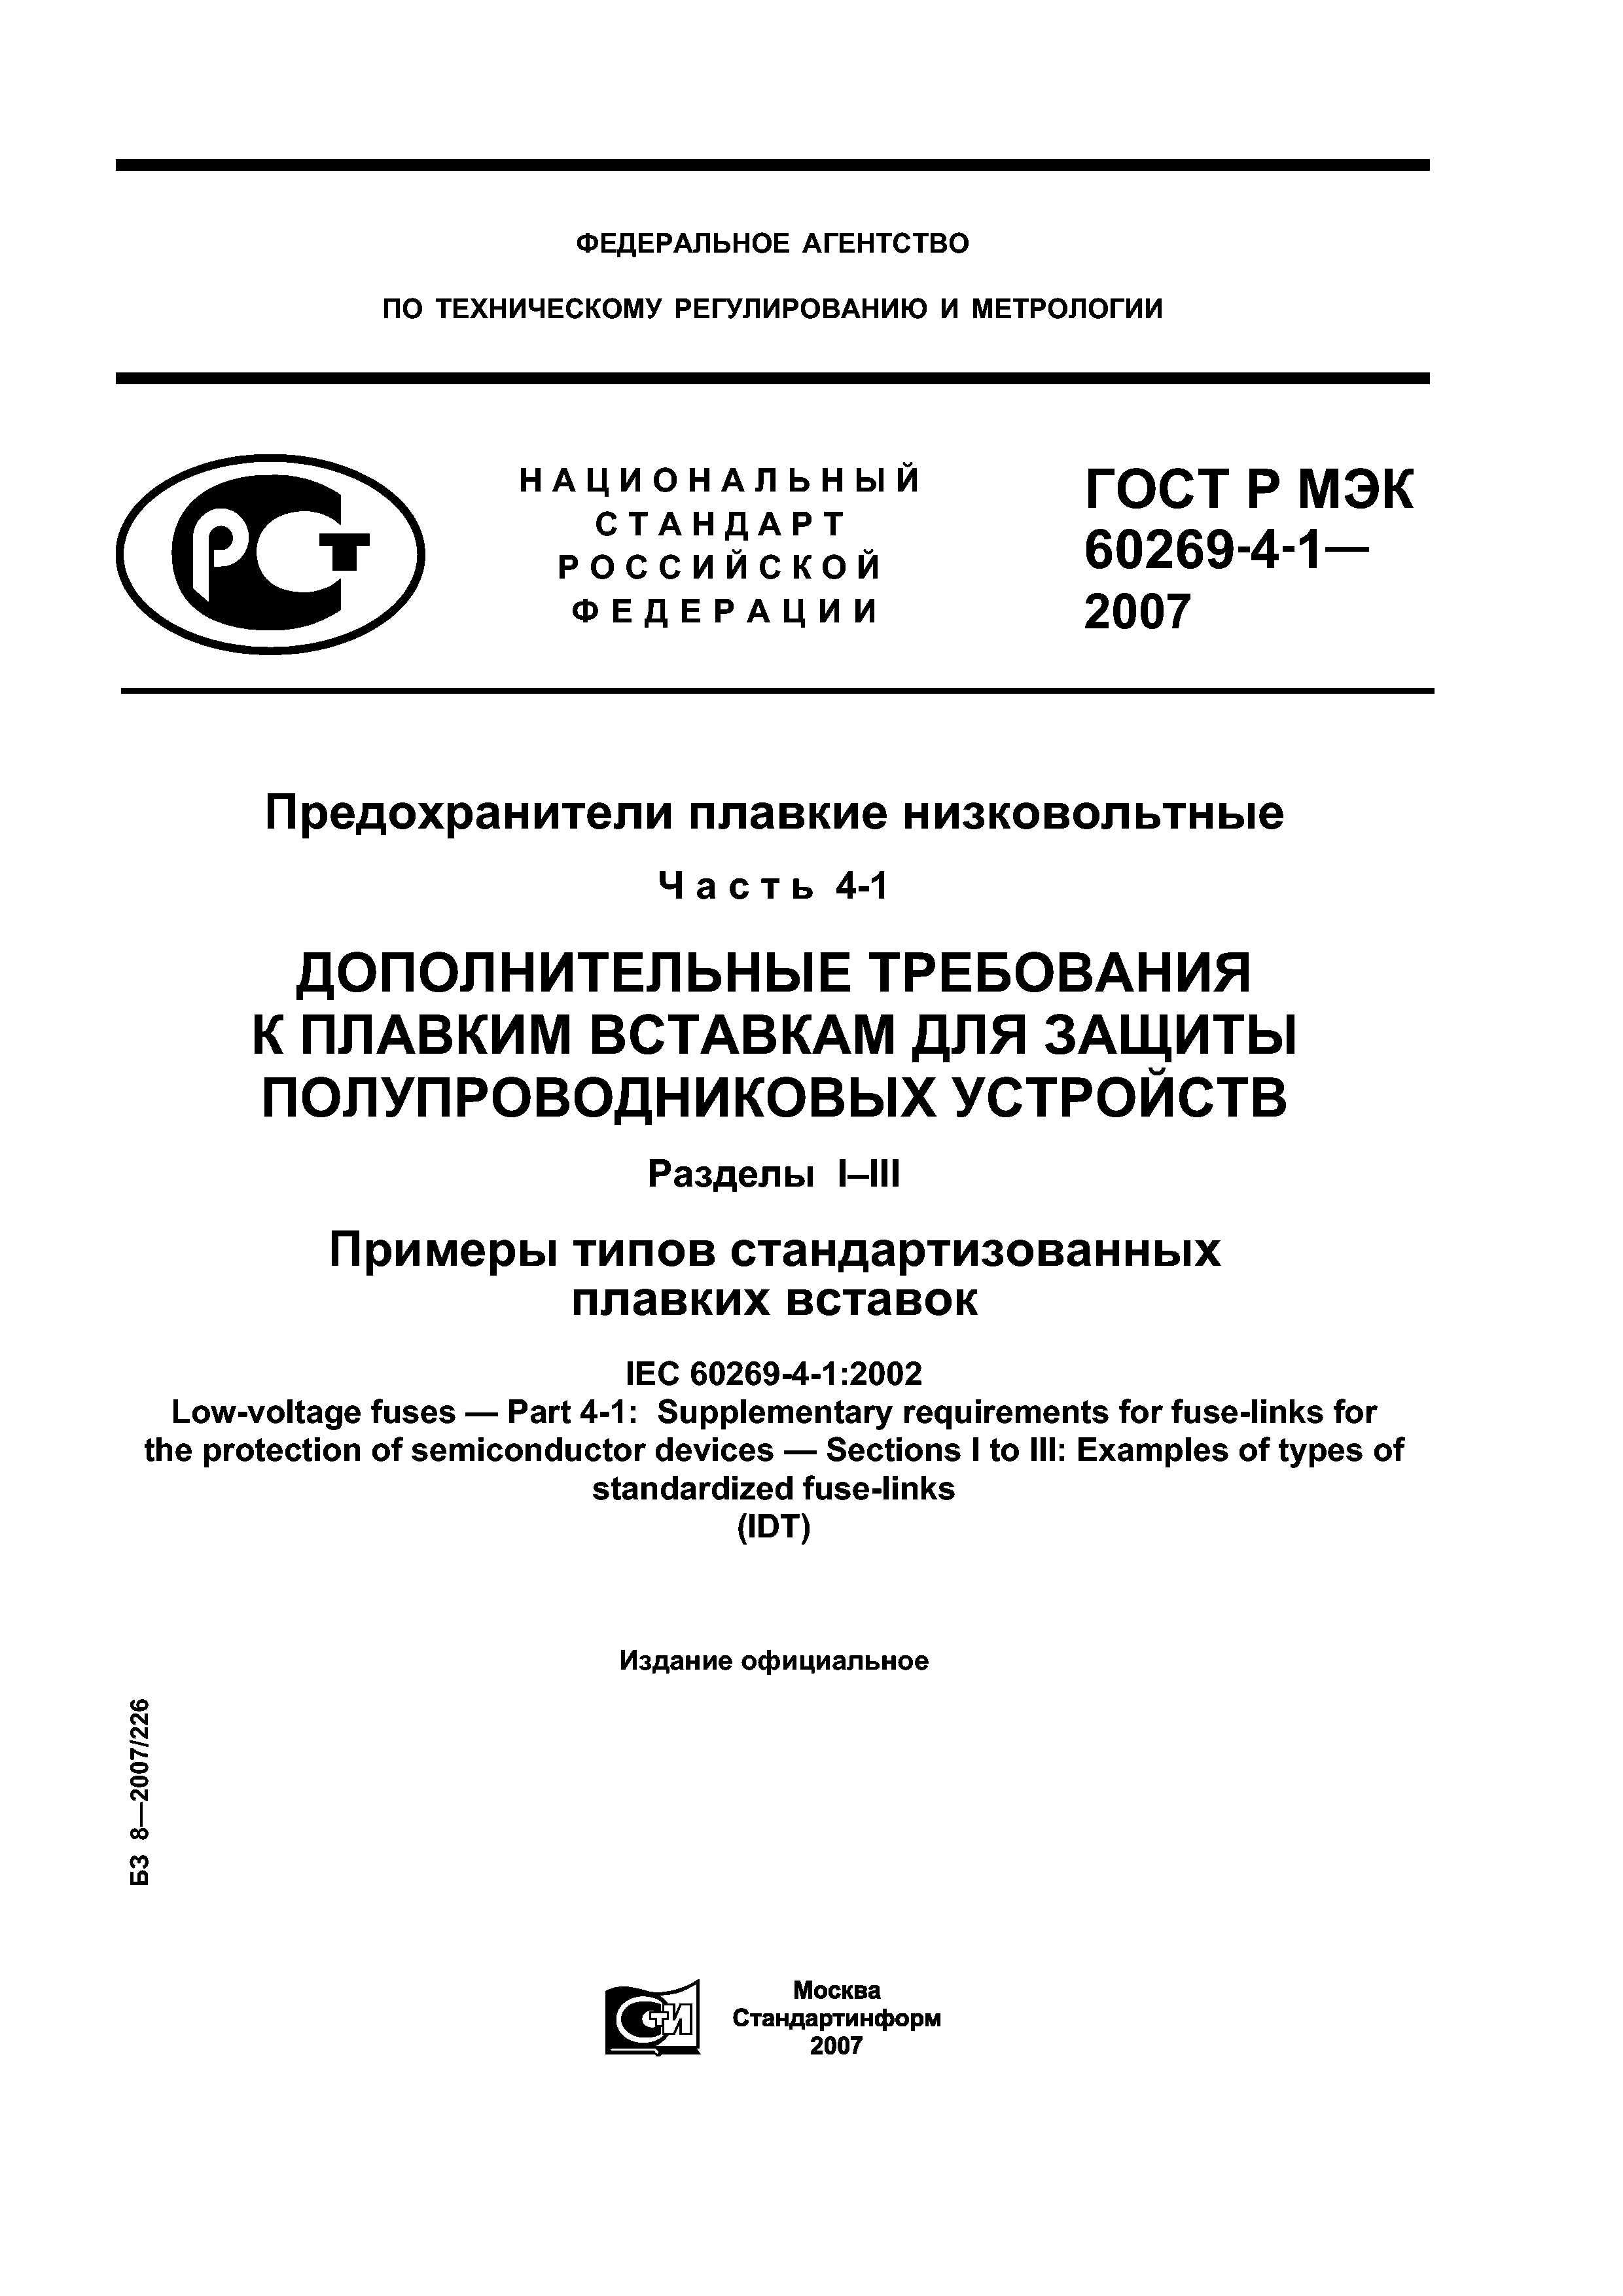 ГОСТ Р МЭК 60269-4-1-2007